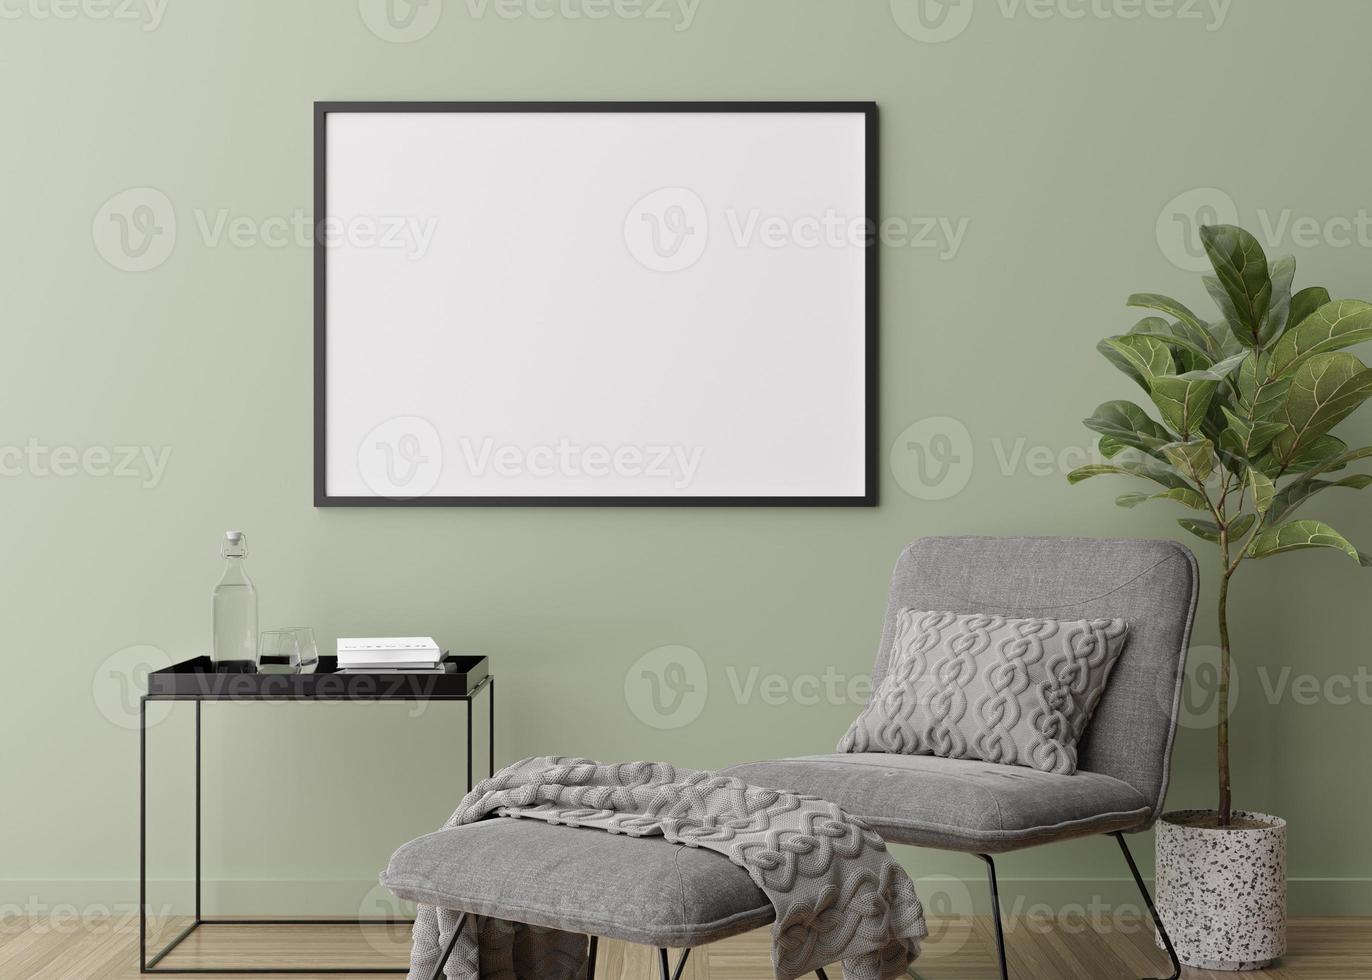 moldura horizontal vazia na parede verde na moderna sala de estar. mock up interior em estilo contemporâneo. livre, copie o espaço para sua foto, cartaz. poltrona, planta, piso em parquet. renderização 3D. foto